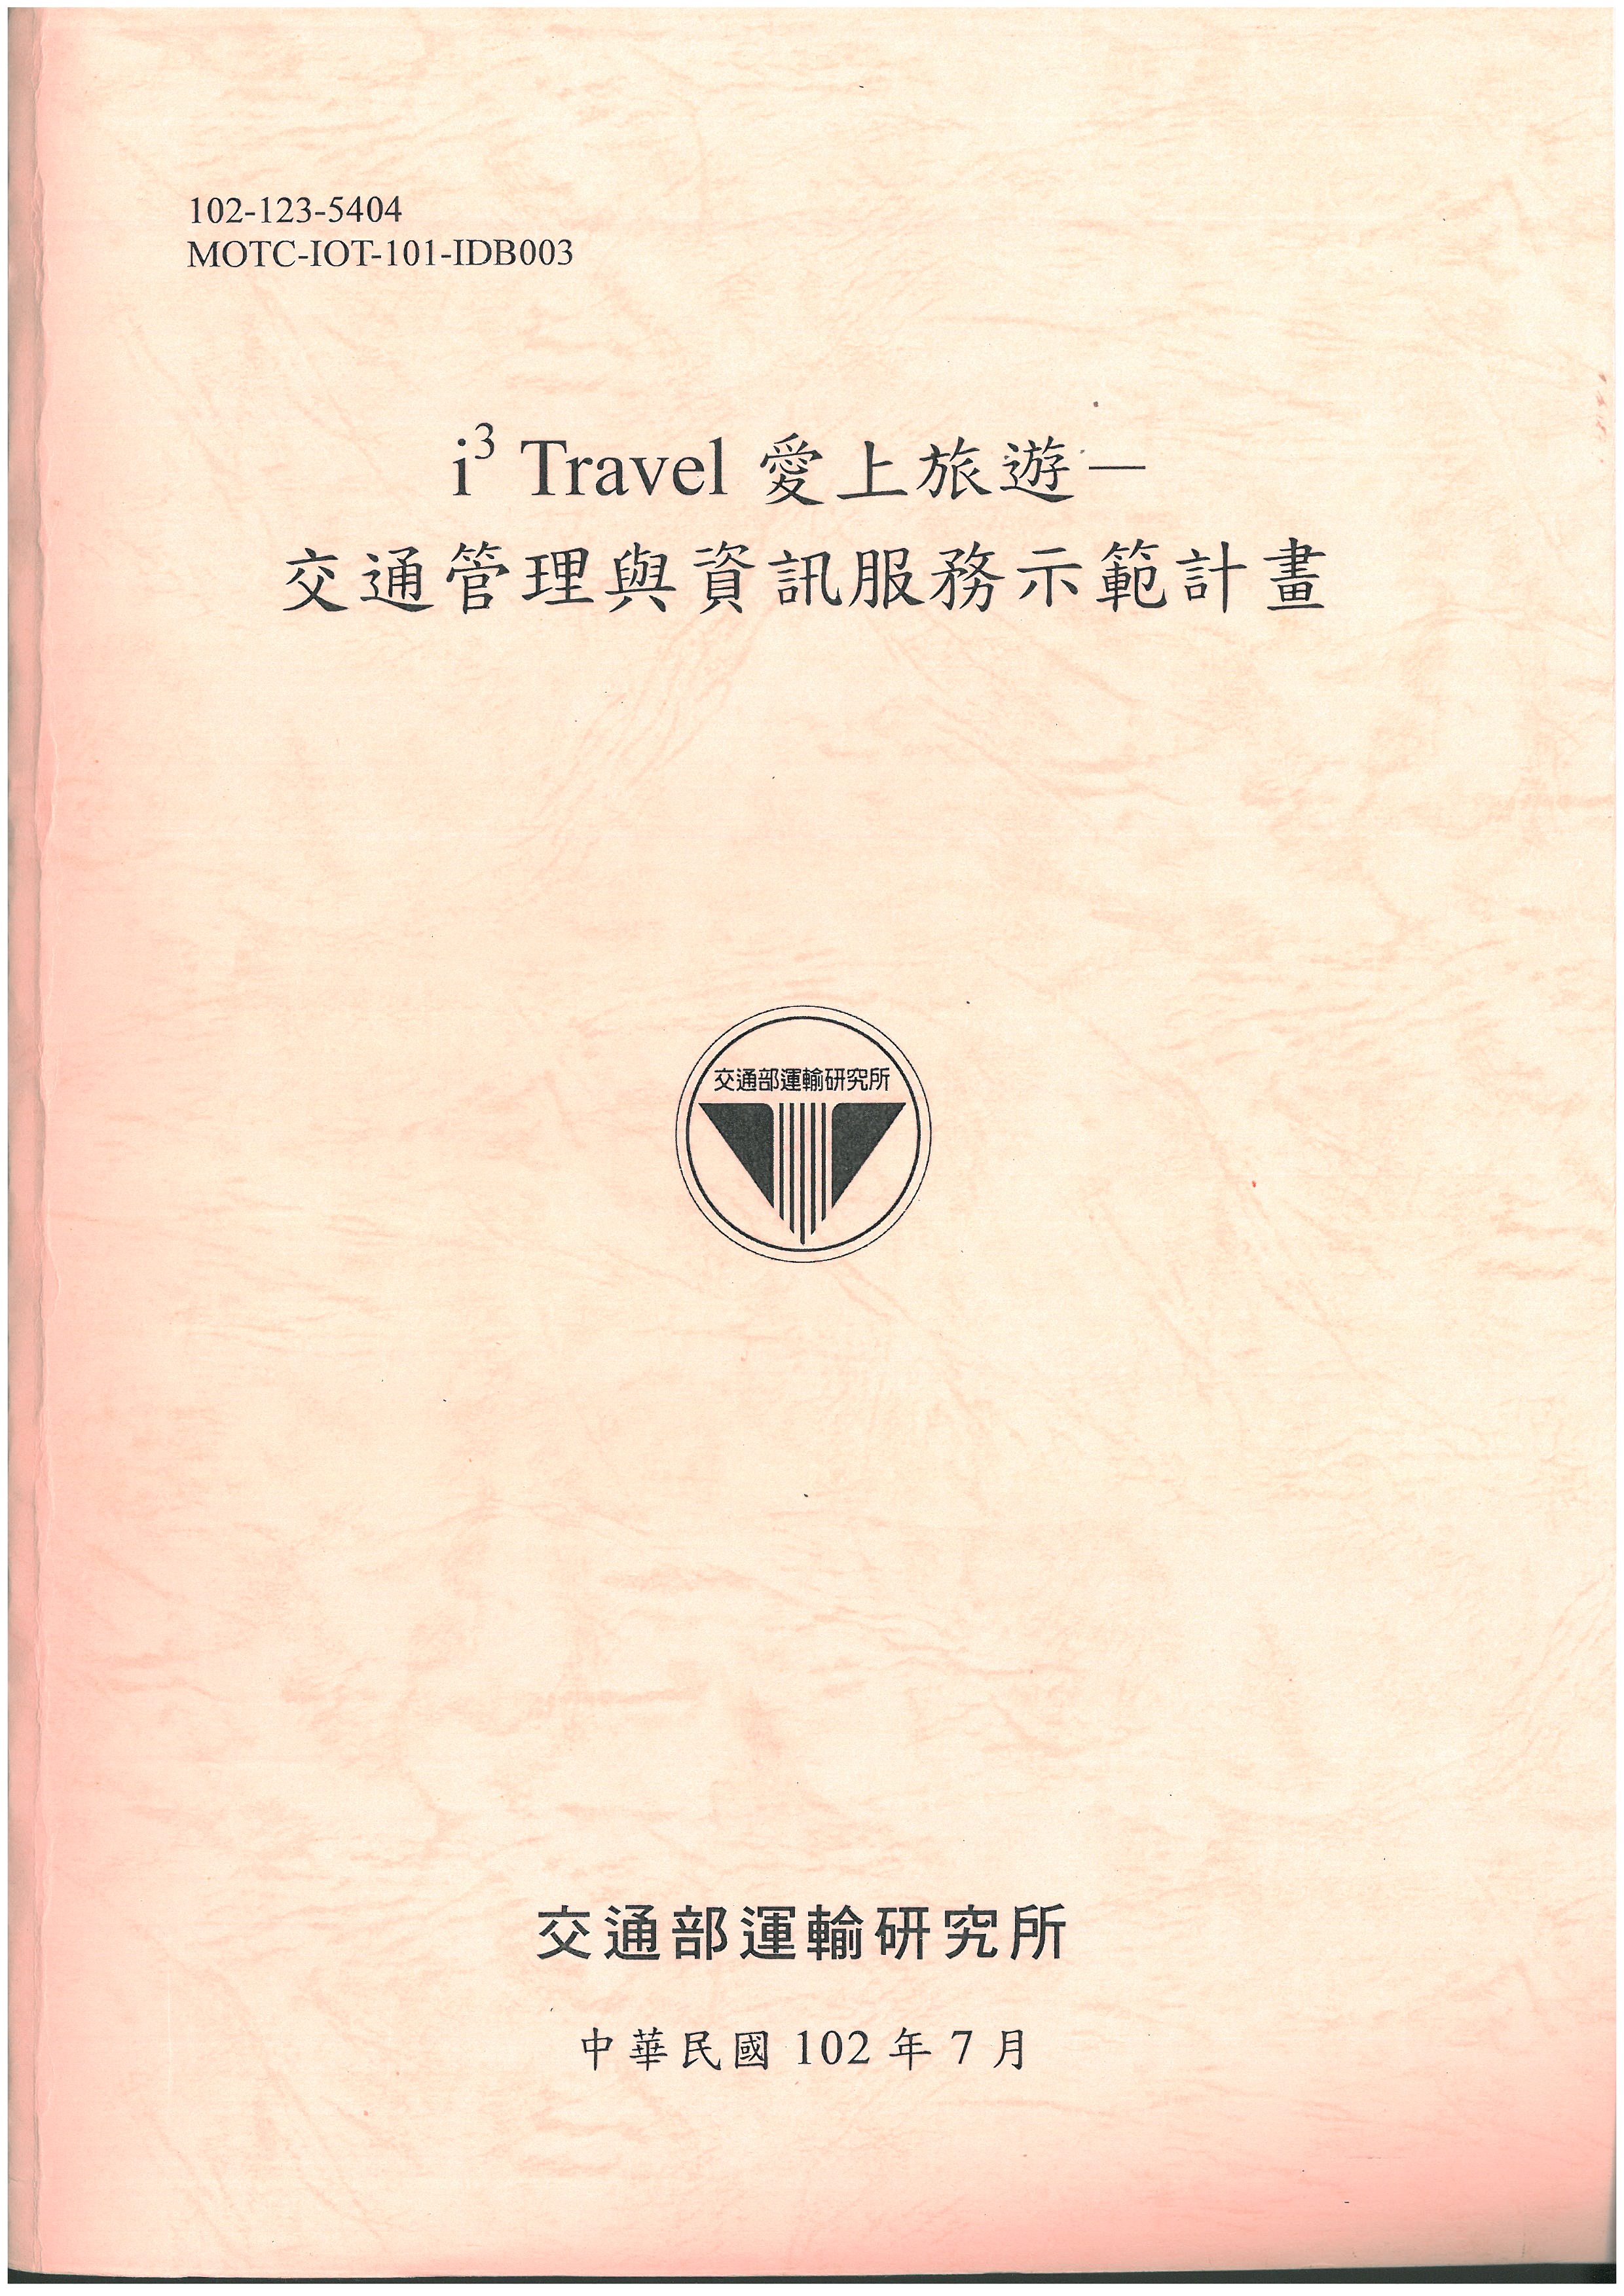 i3 Travel 愛上旅遊-交通管理與資訊服務示範計畫